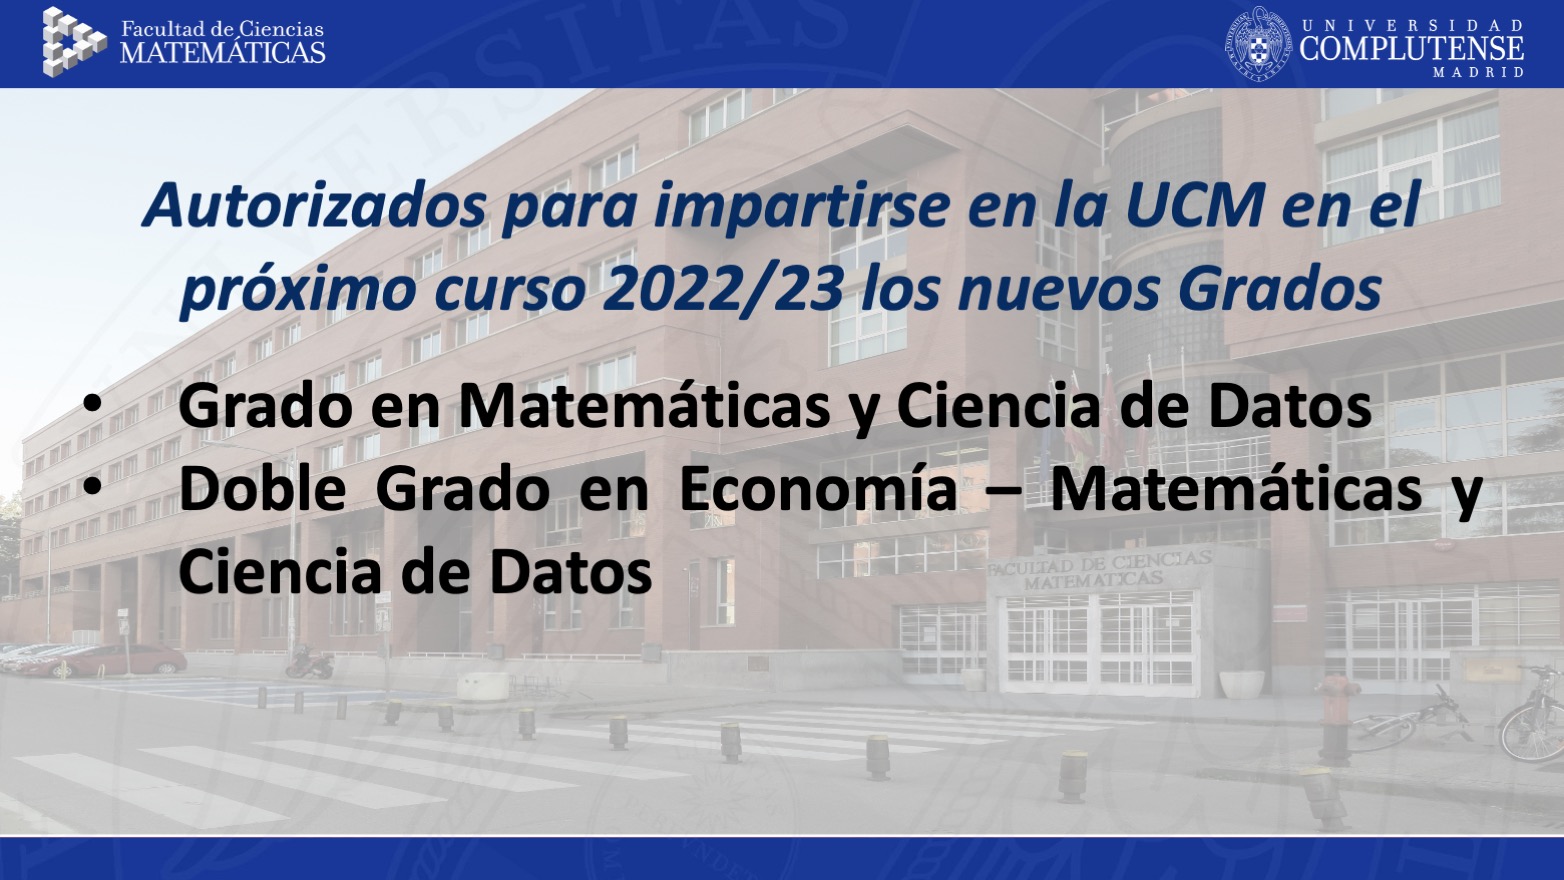 La Facultad estrenará el nuevo Grado de Matemáticas y Ciencia de Datos el próximo curso 2022/23